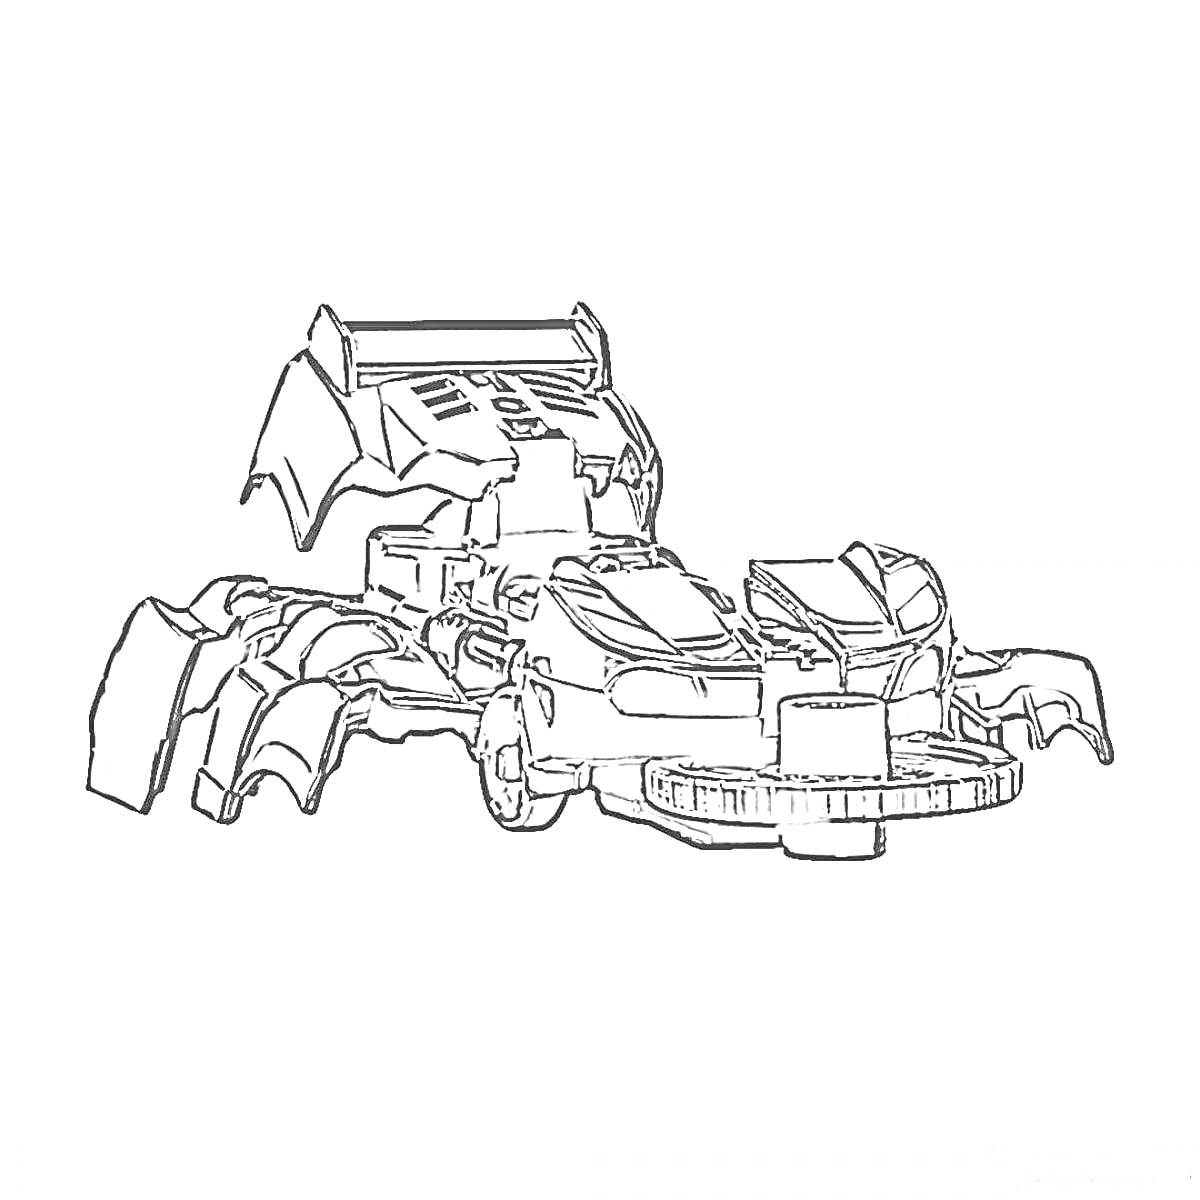 Раскраска Дикий скричер в виде боевой машины с элементами паука, включая мощные колеса, острые когти и аэродинамическую форму